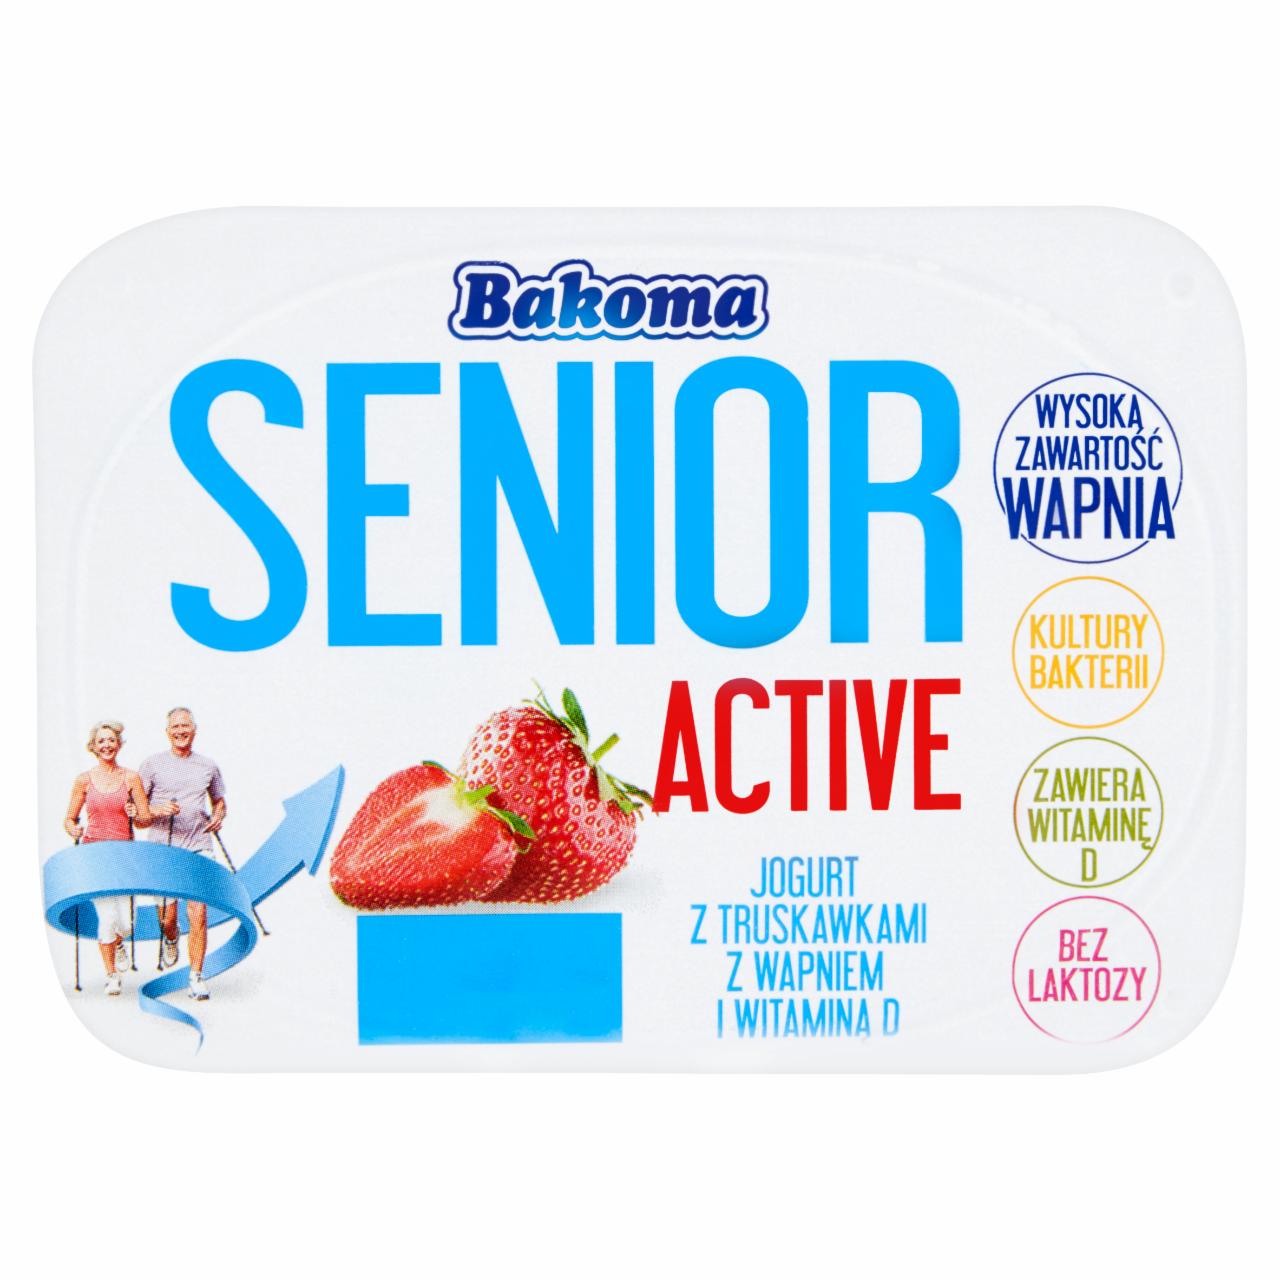 Zdjęcia - Bakoma Senior Active Jogurt z truskawkami z wapniem i witaminą D 130 g